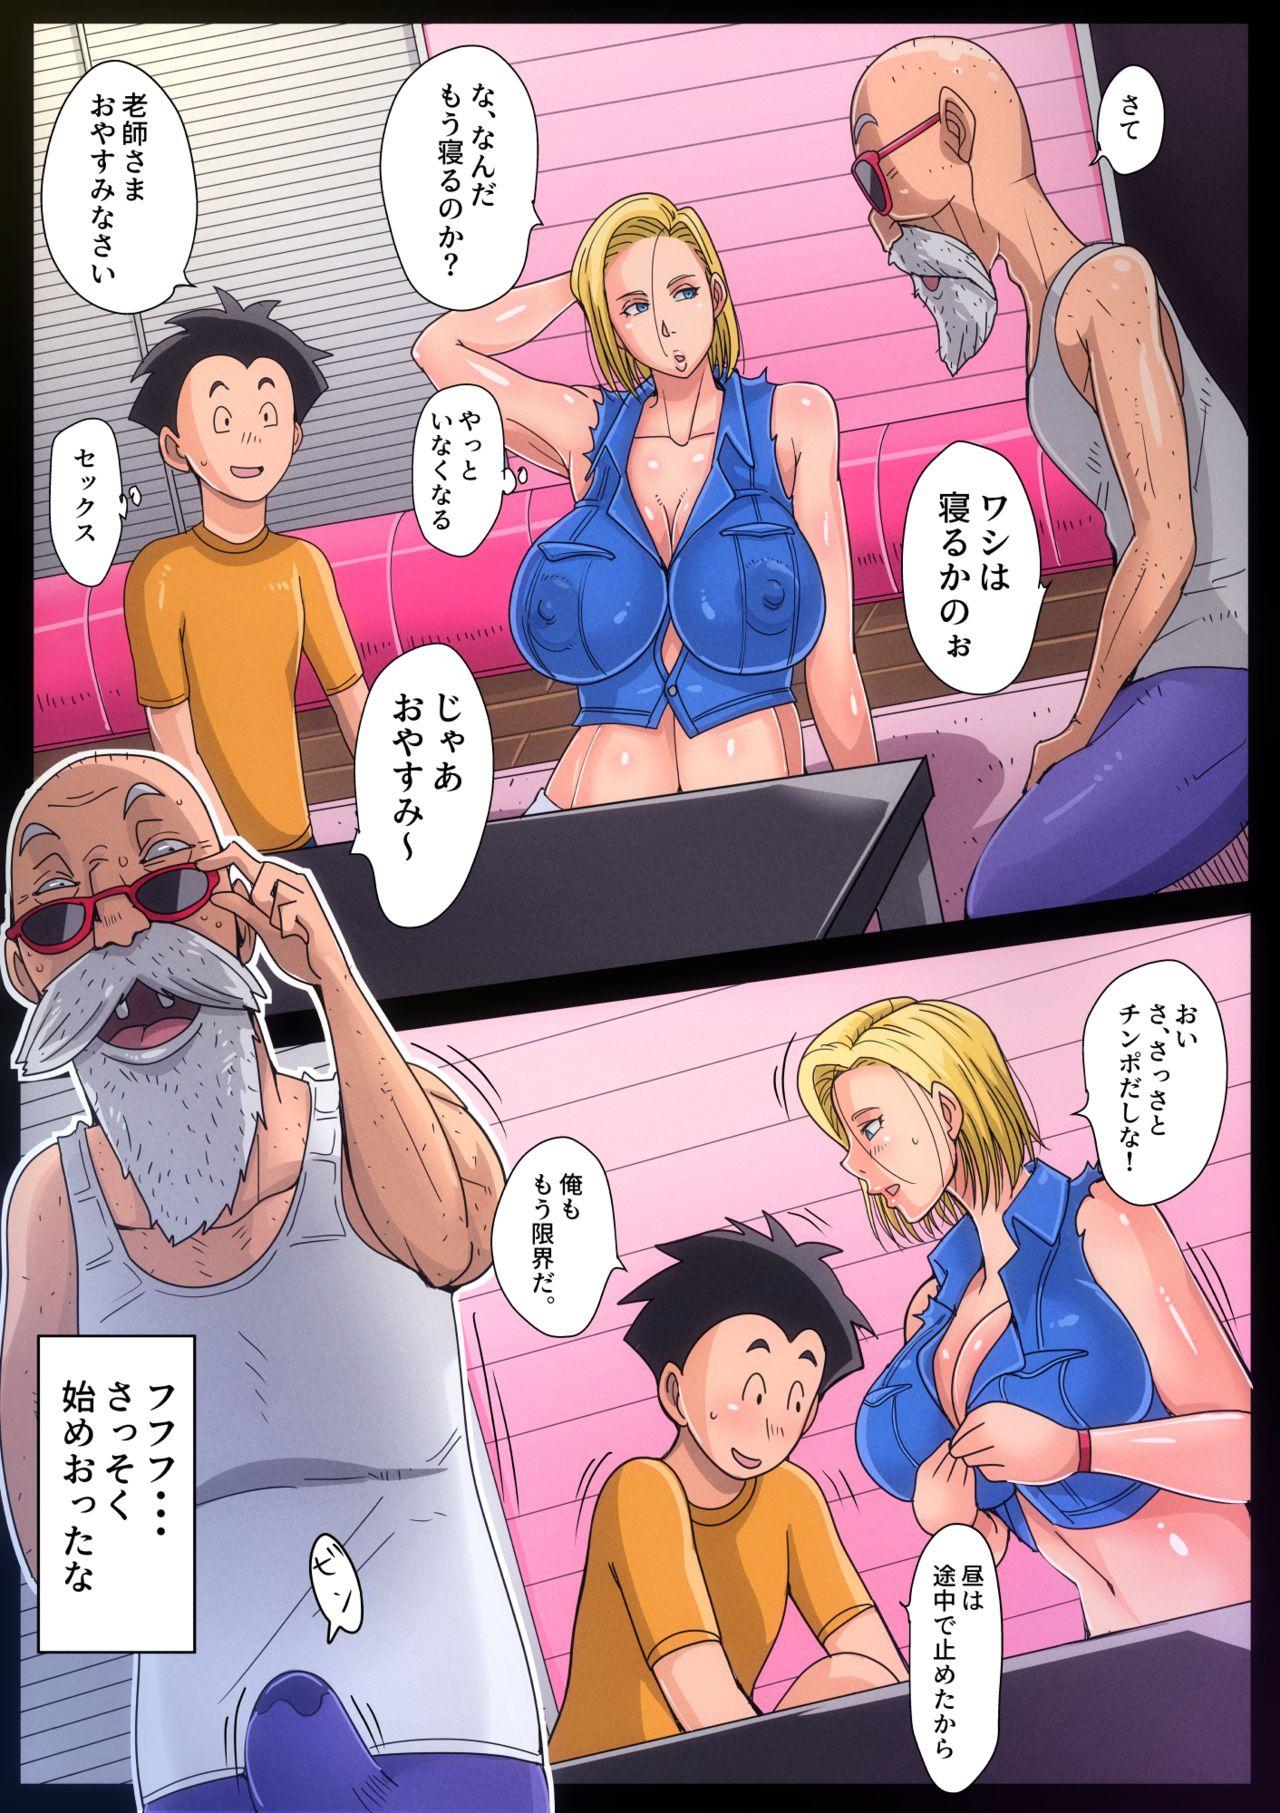 Muscle B-Kyuu Manga 10 - Dragon ball z Pov Sex - Page 3